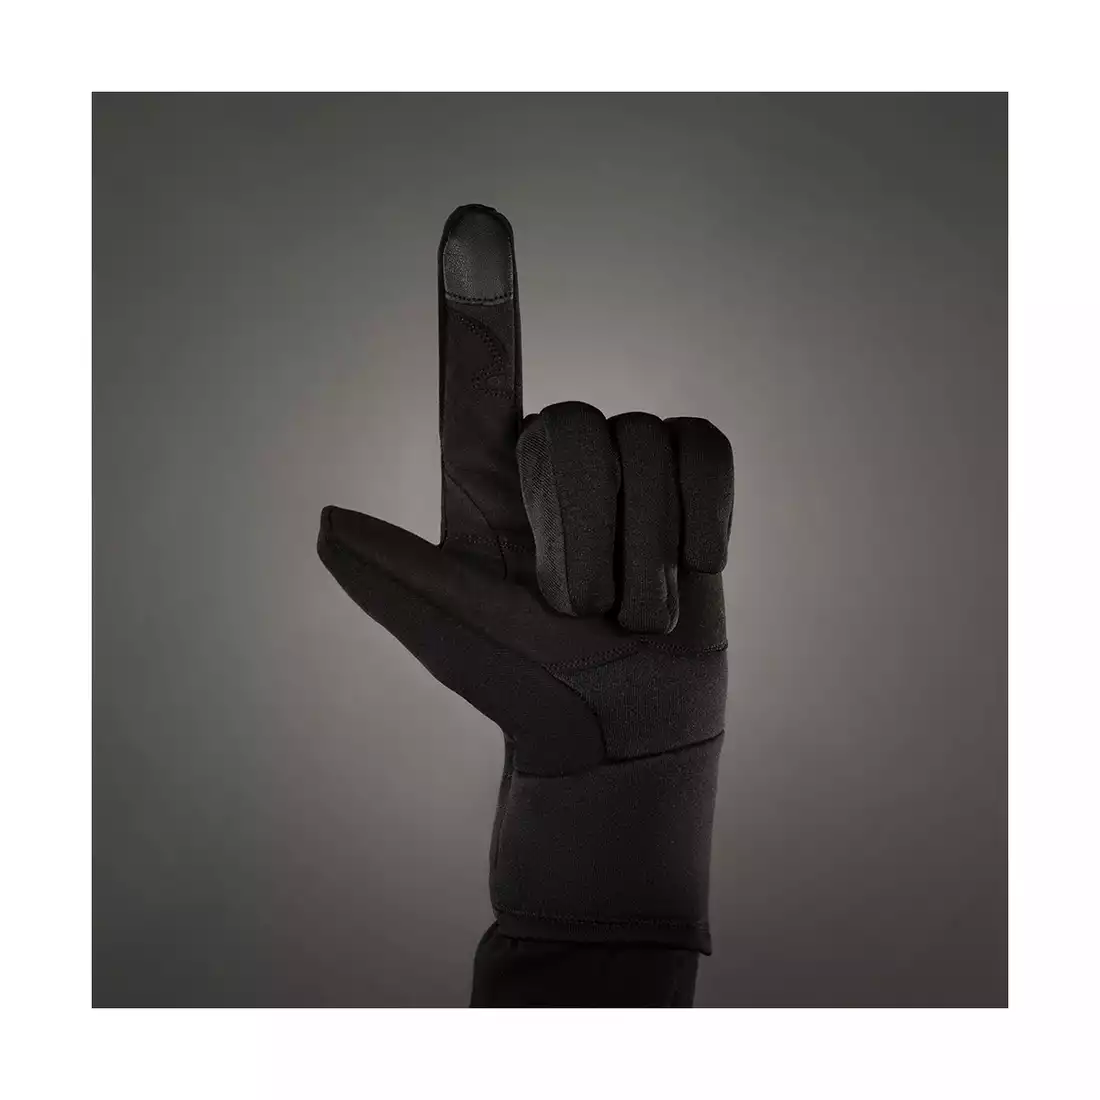 CHIBA POLARFLEECE TITAN rękawiczki zimowe, czarne 